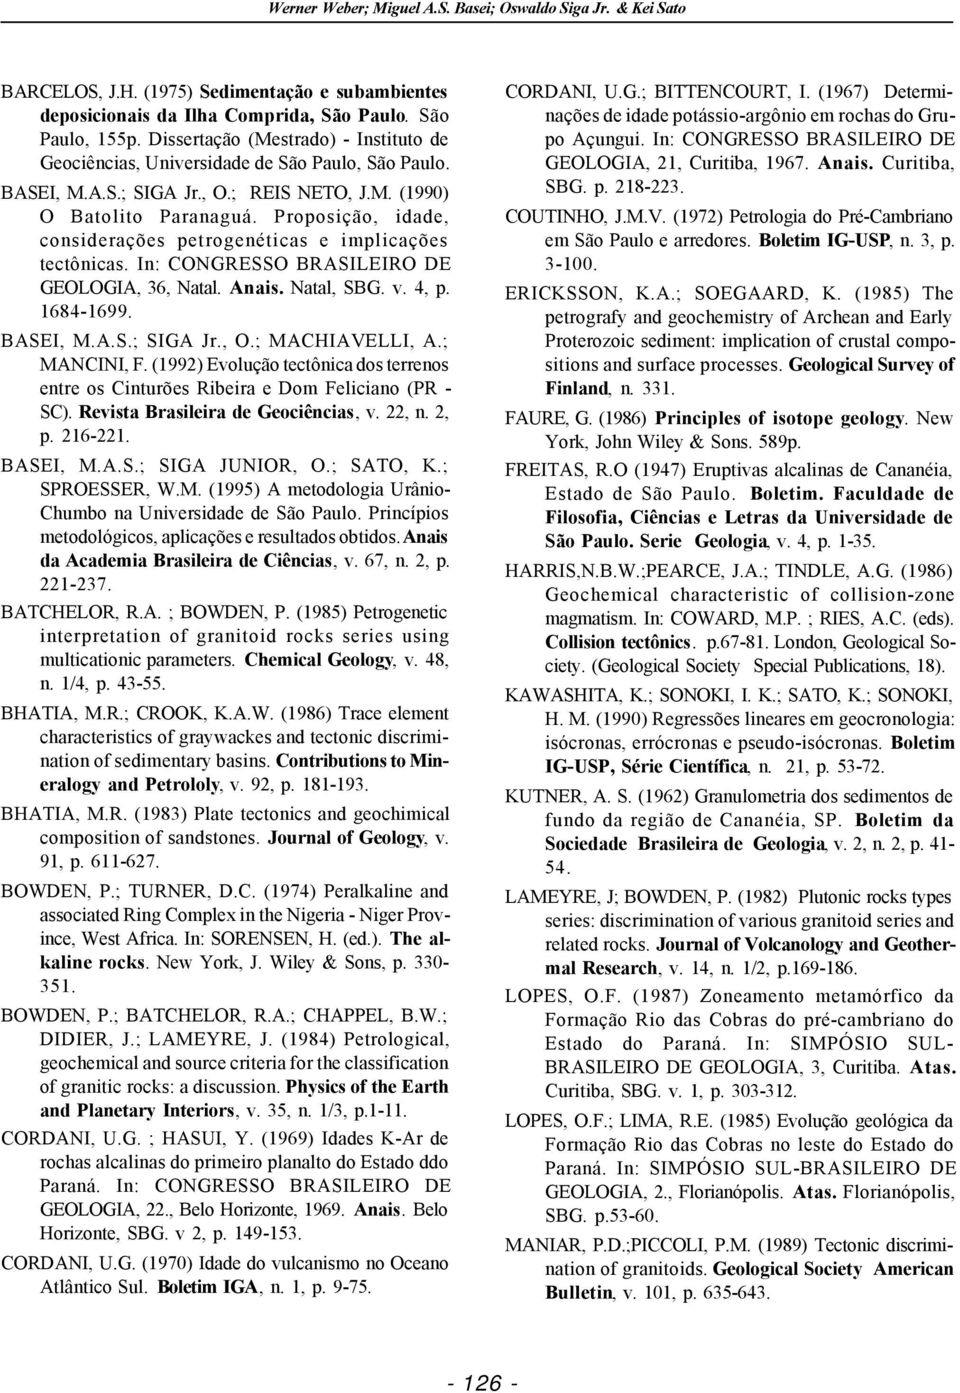 Proposição, idade, considerações petrogenéticas e implicações tectônicas. In: CONGRESSO BRASILEIRO DE GEOLOGIA, 36, Natal. Anais. Natal, SBG. v. 4, p. 1684-1699. BASEI, M.A.S.; SIGA Jr., O.